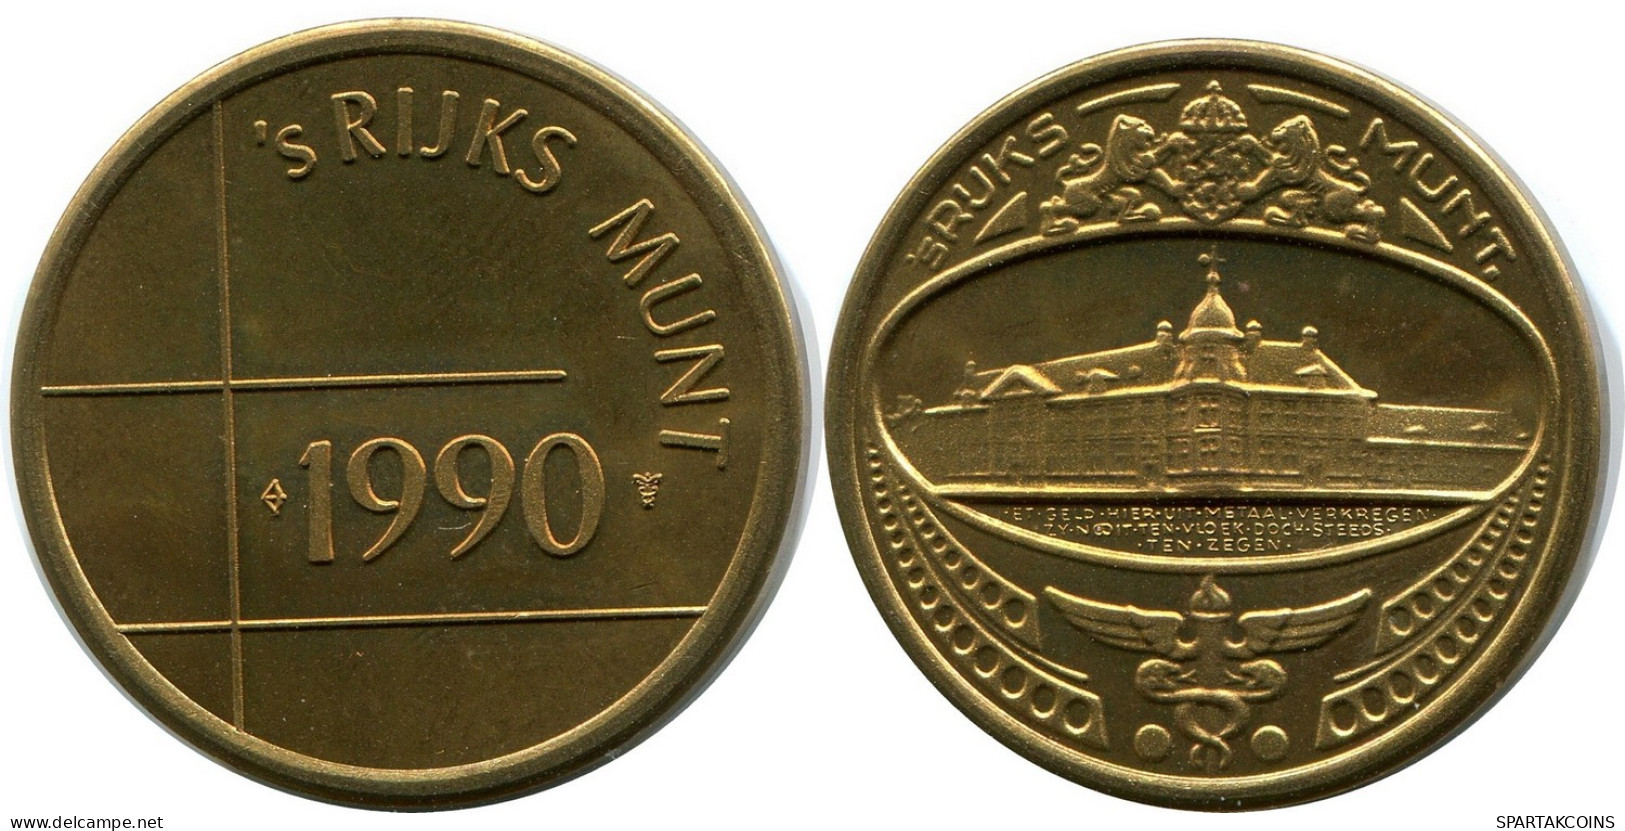 1990 ROYAL DUTCH MINT SET TOKEN NÉERLANDAIS NETHERLANDS MINT (From BU Mint Set) #AH029.F - Jahressets & Polierte Platten